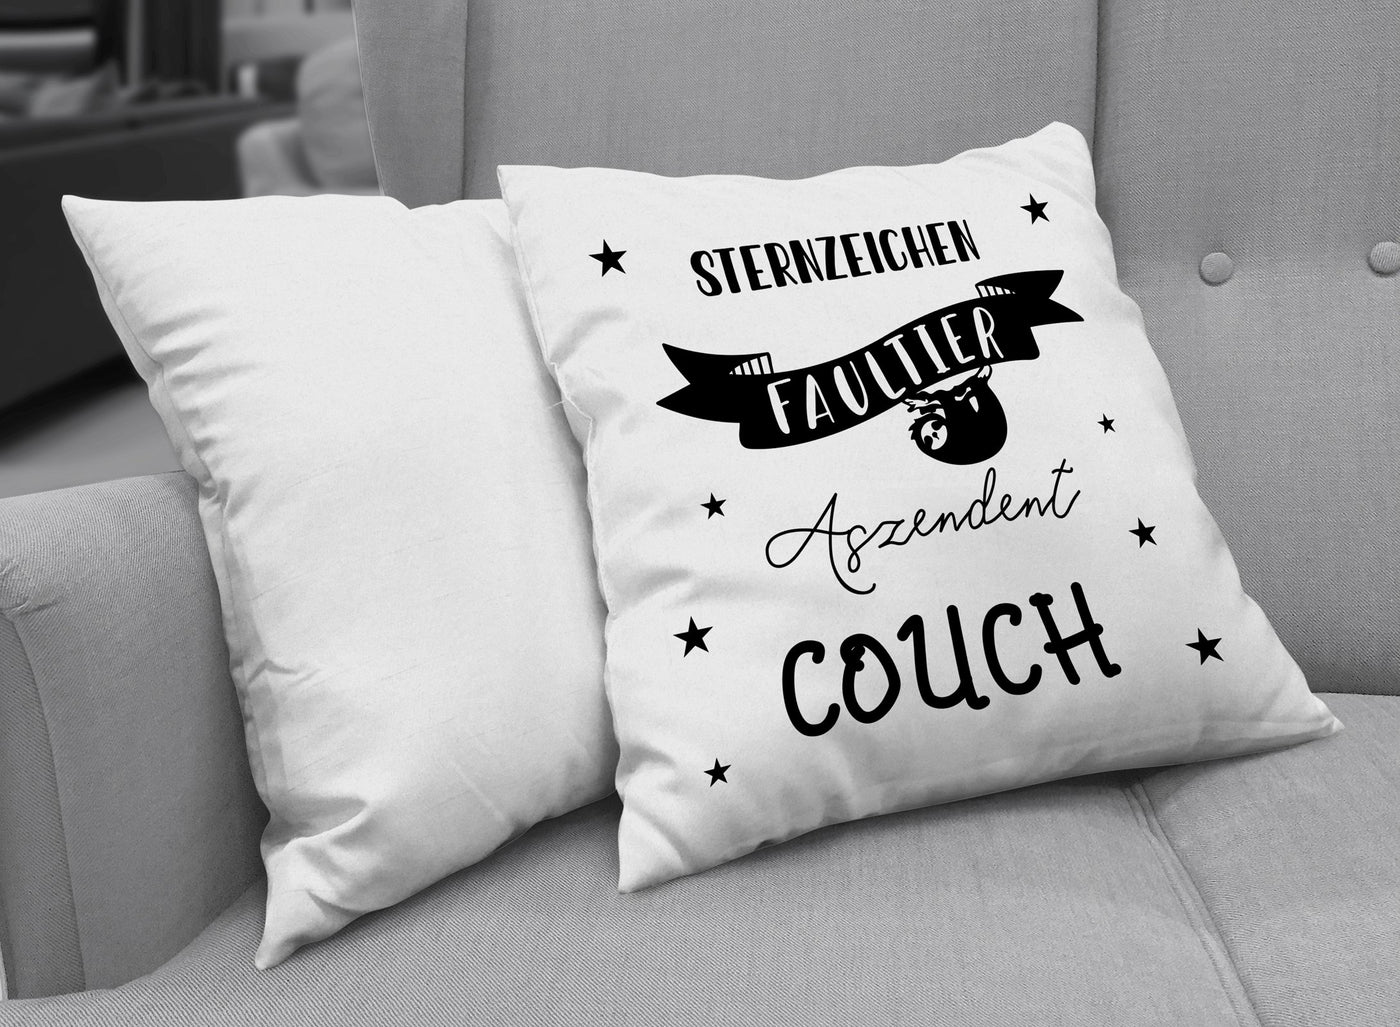 Bild: Kissen - Sternzeichen Faultier - Aszendent Couch V2 Geschenkidee